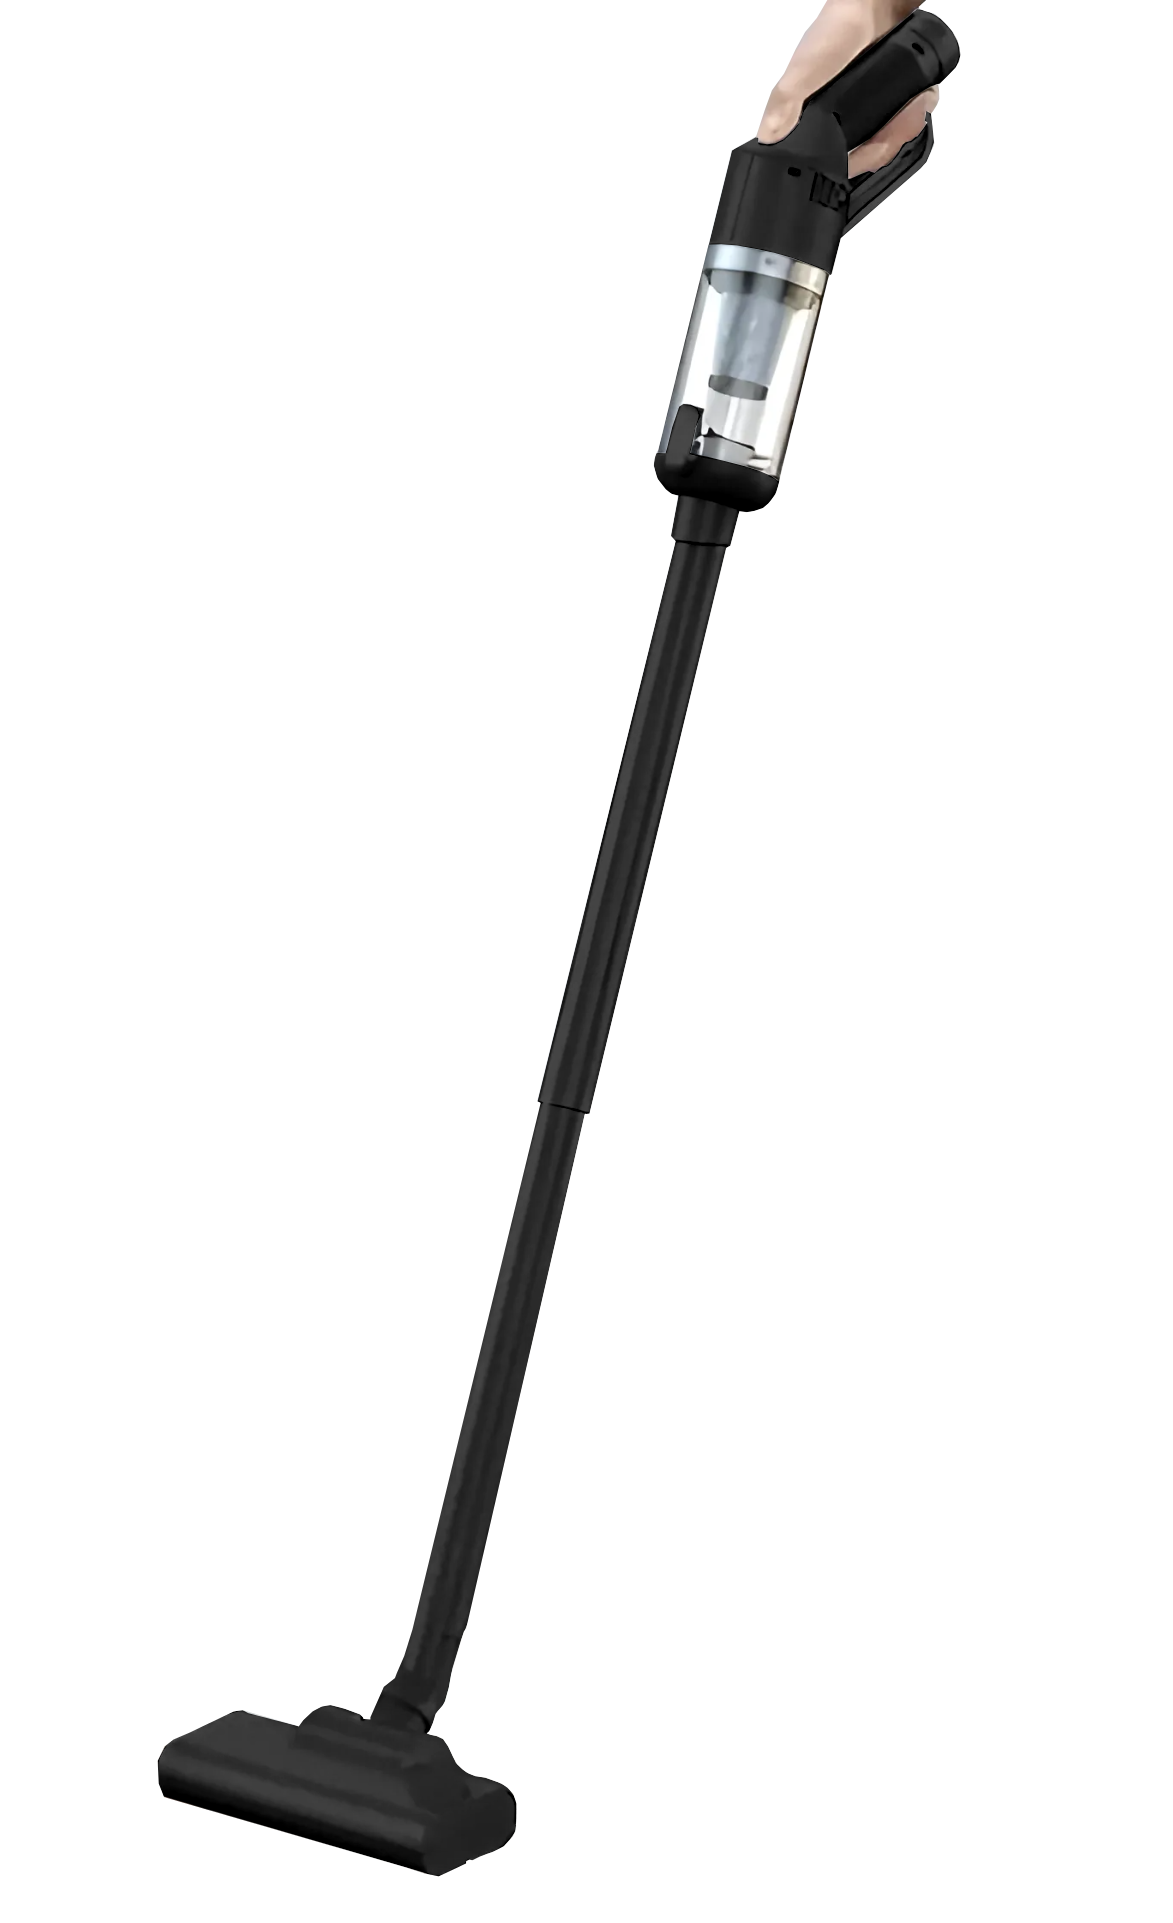 CARCAM Vacuum Cleaner LT-127 Black стилус carcam smart pencil id755 black